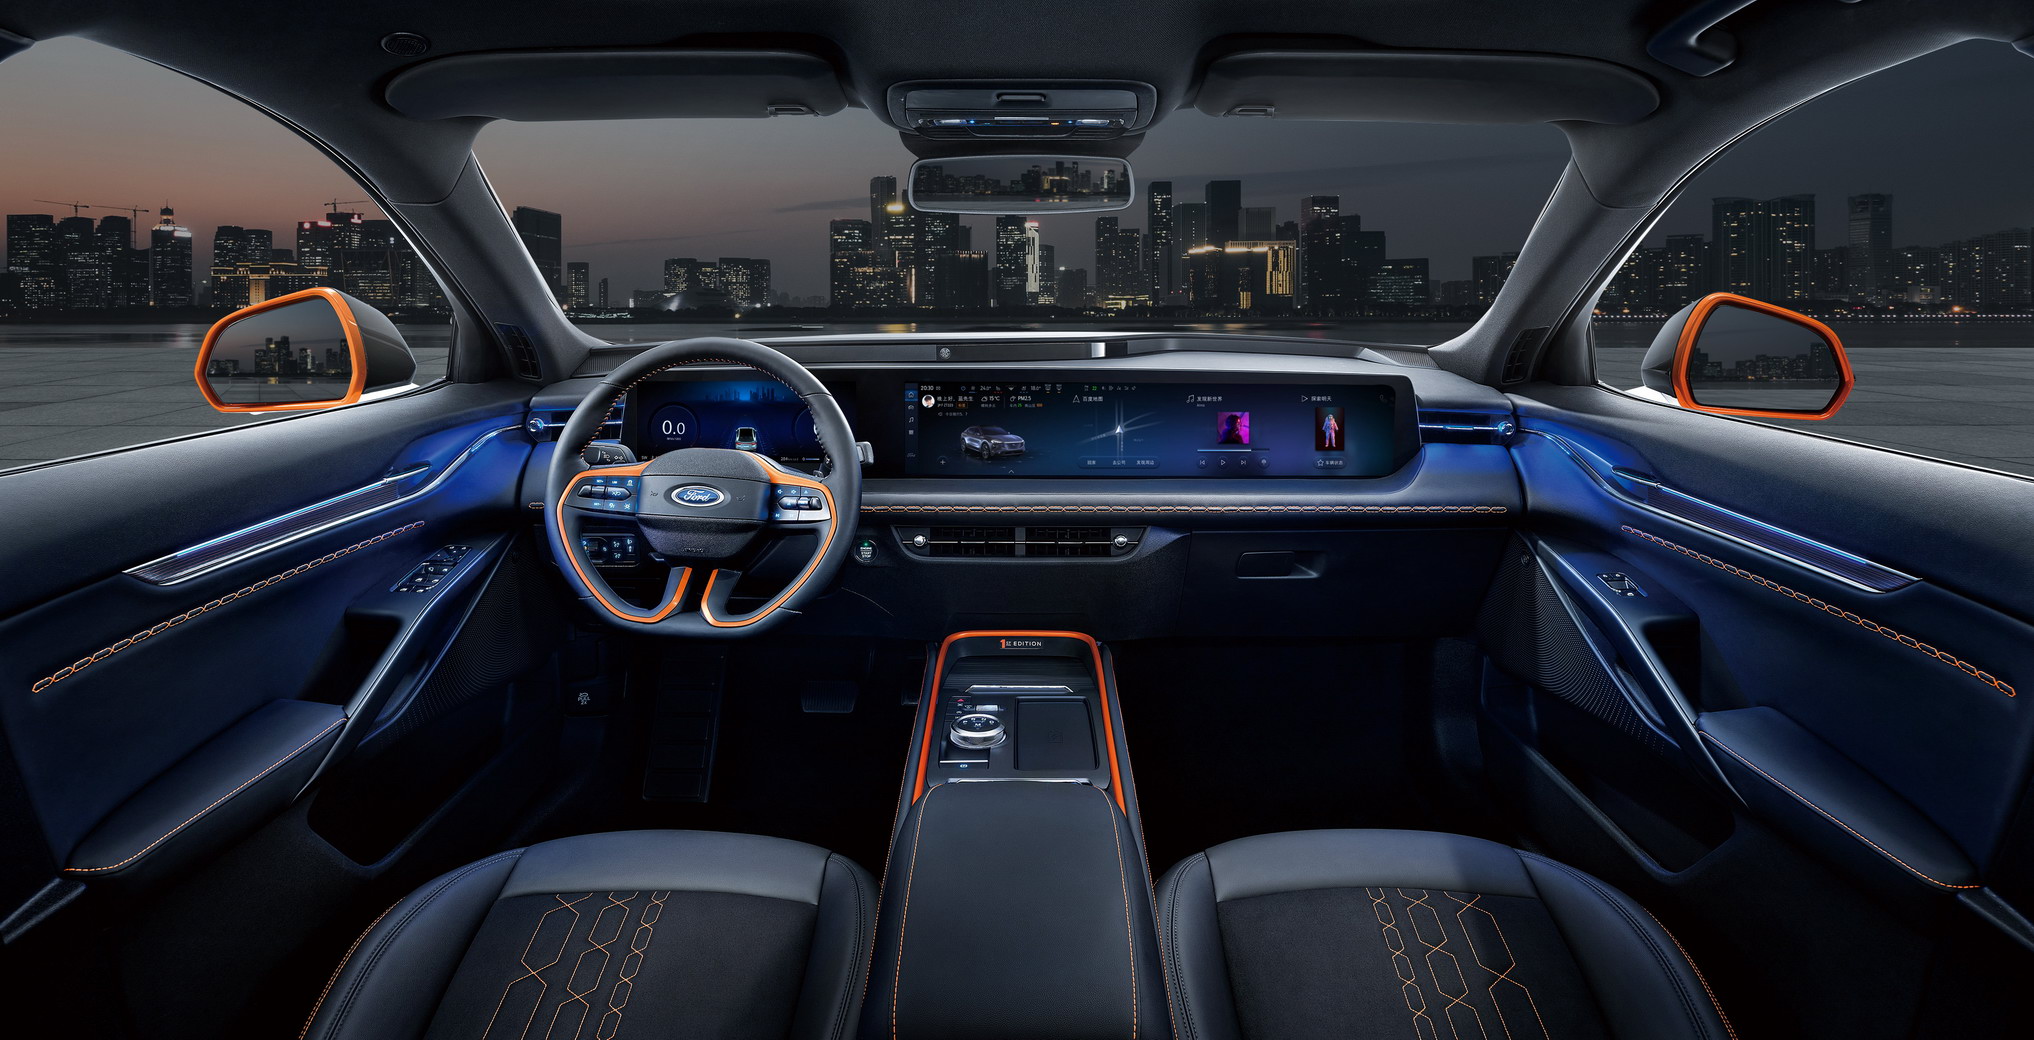 Ford Evos 2021 ra mắt với màn hình khổng lồ 1,1 mét 2021-ford-evos-china-5.jpg